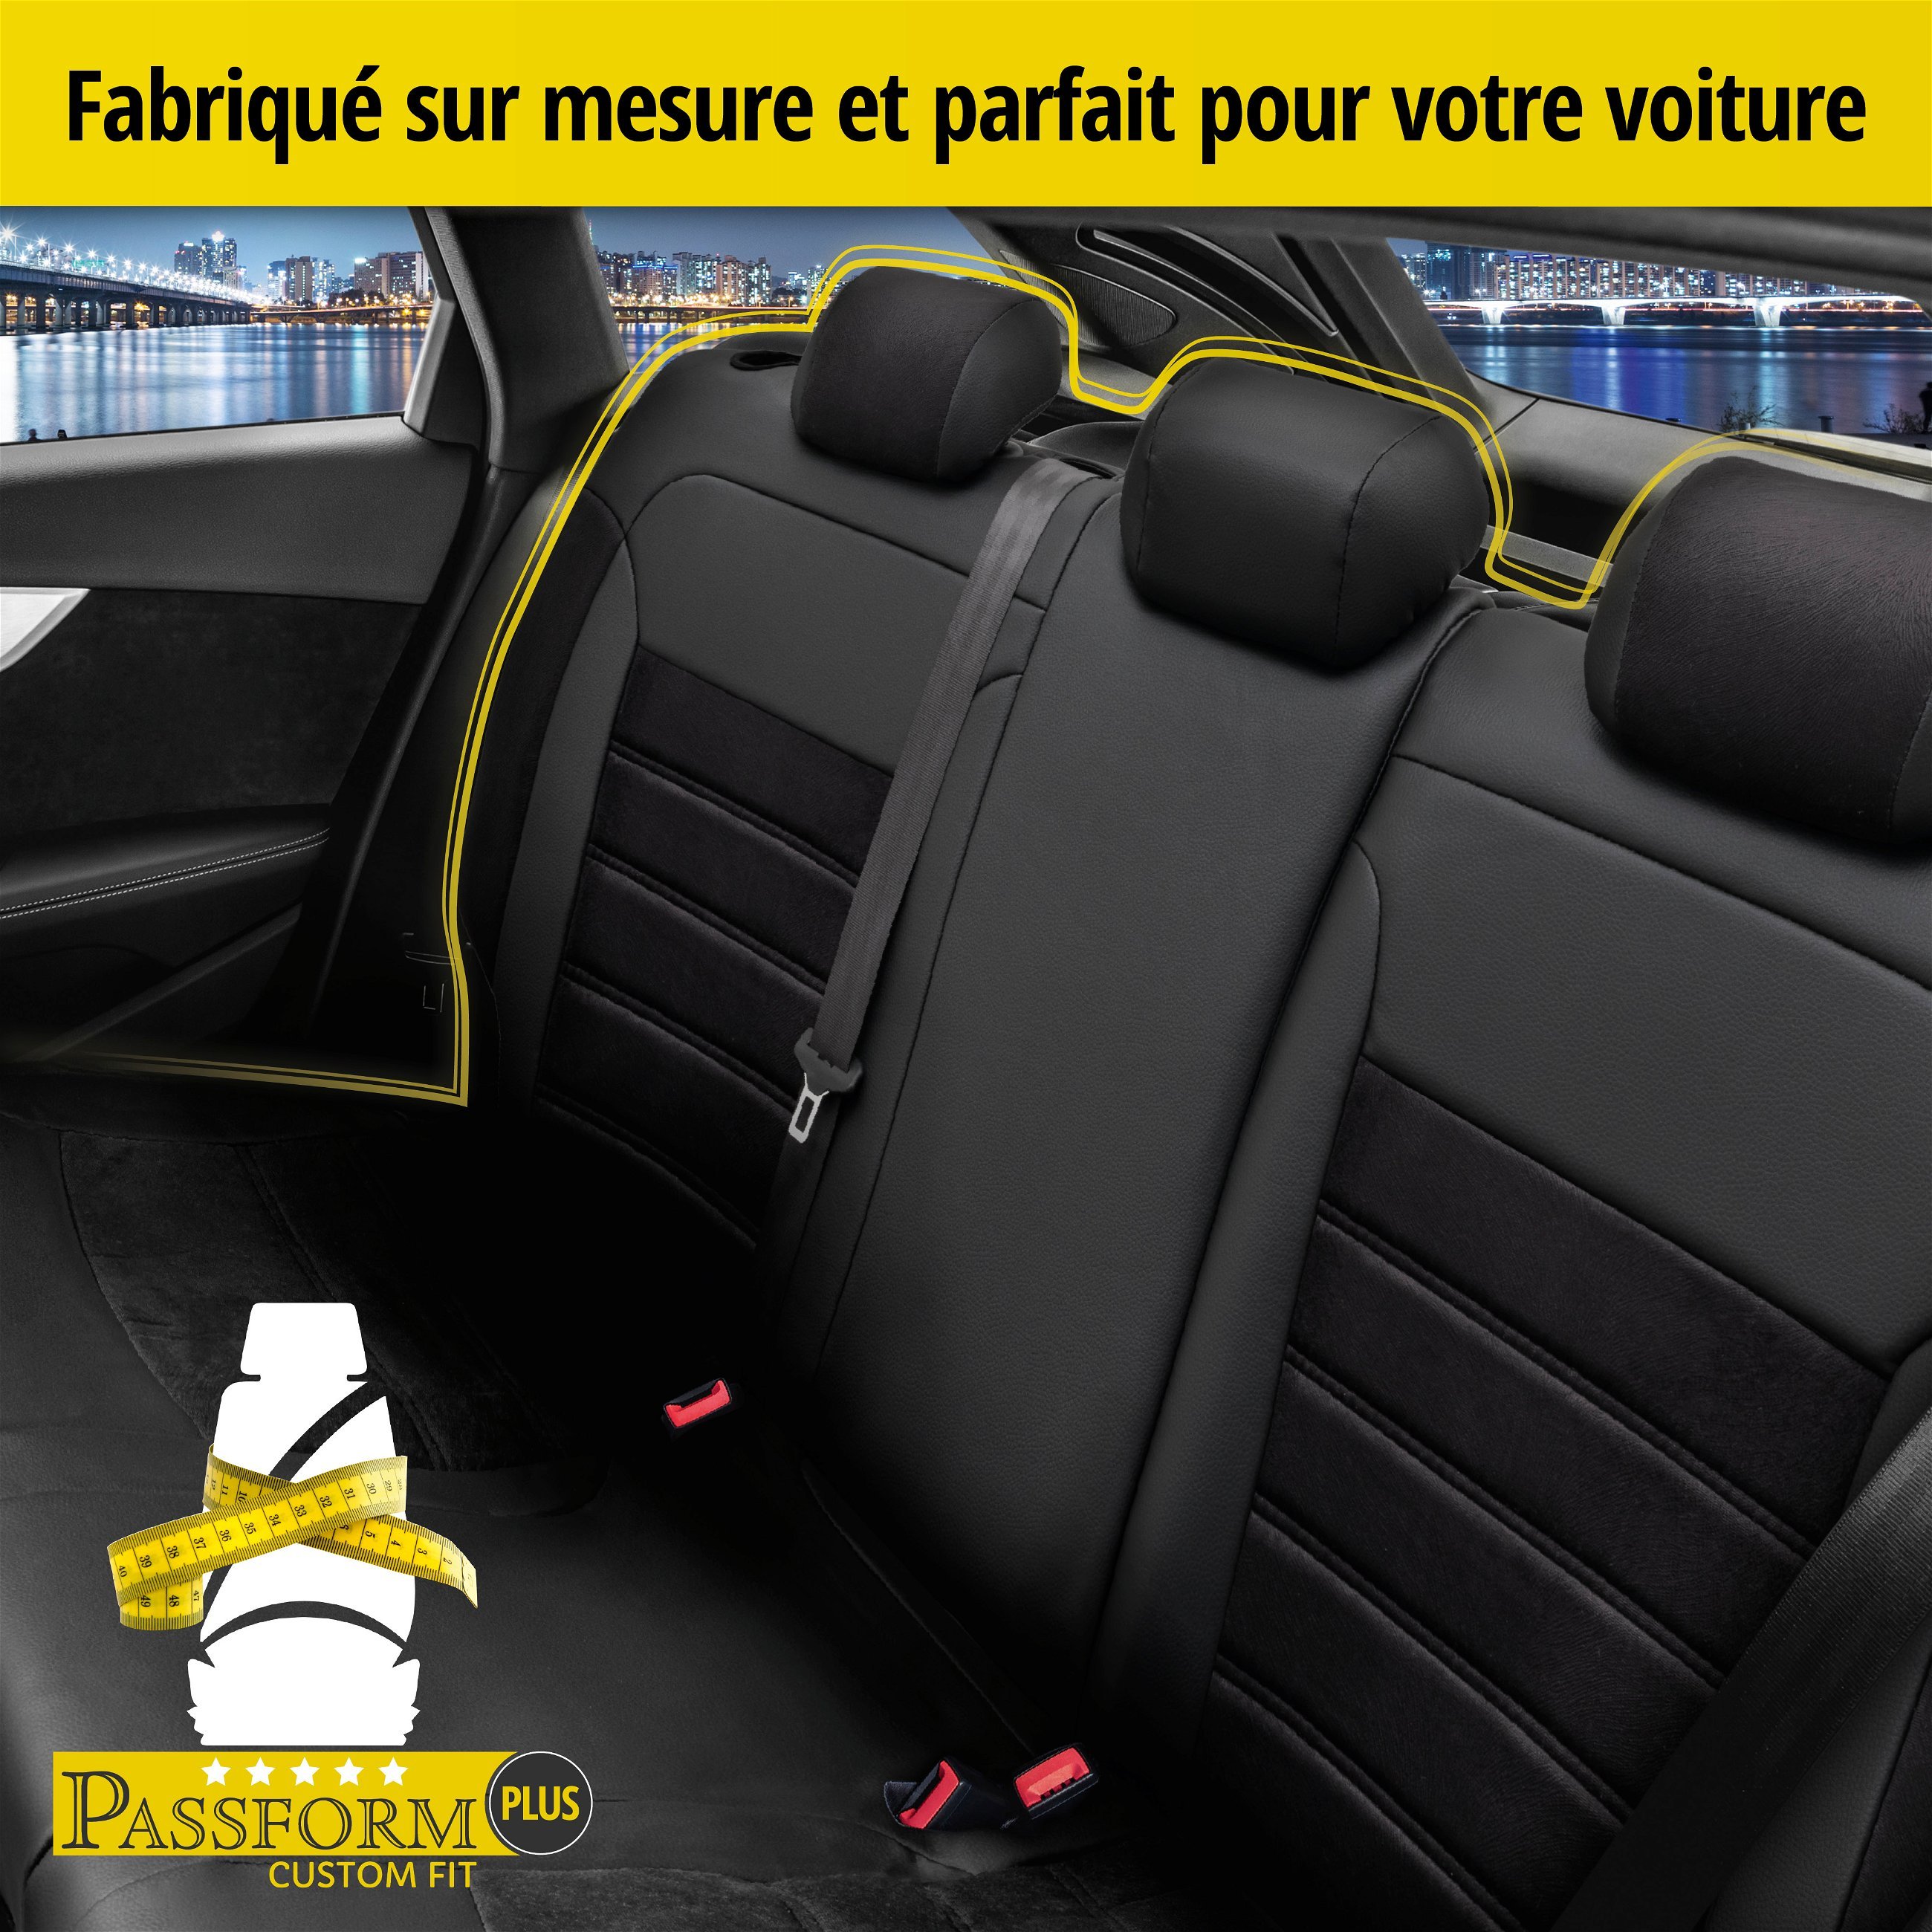 Housse de siège Bari pour Ford Mondeo IV (BA7) 03/2007-01/2015, 1 housse de siège arrière pour sièges normaux